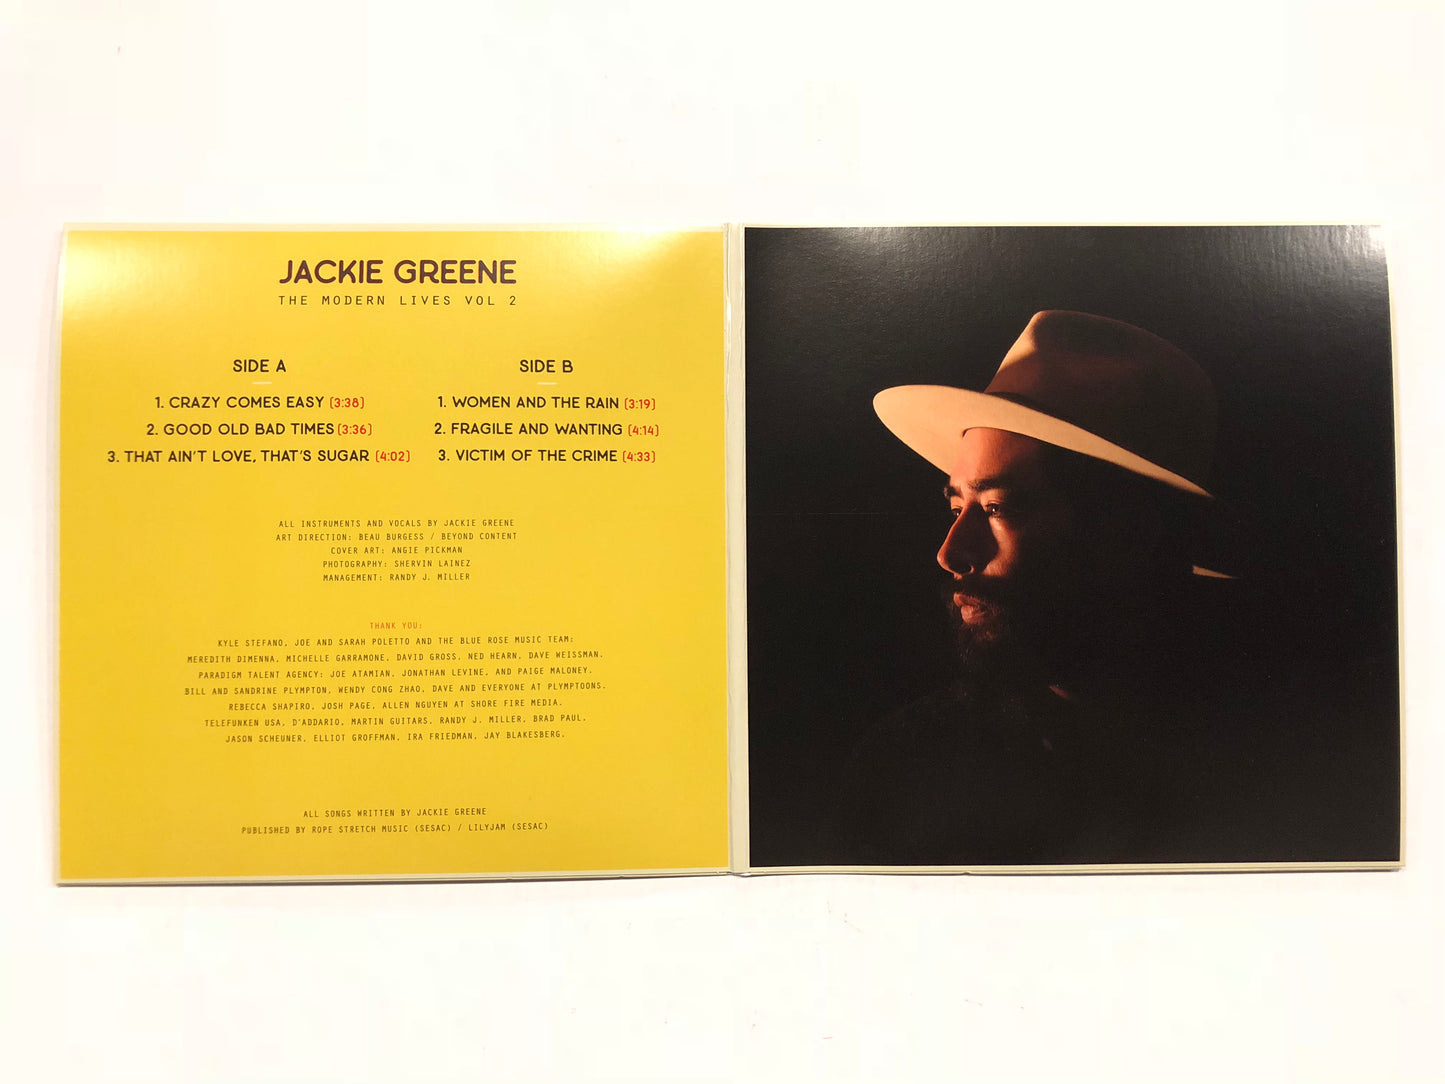 Jackie Greene The Modern Lives Vol. 2 vinyl album EP blue rose music back inside sleeve black vinyl